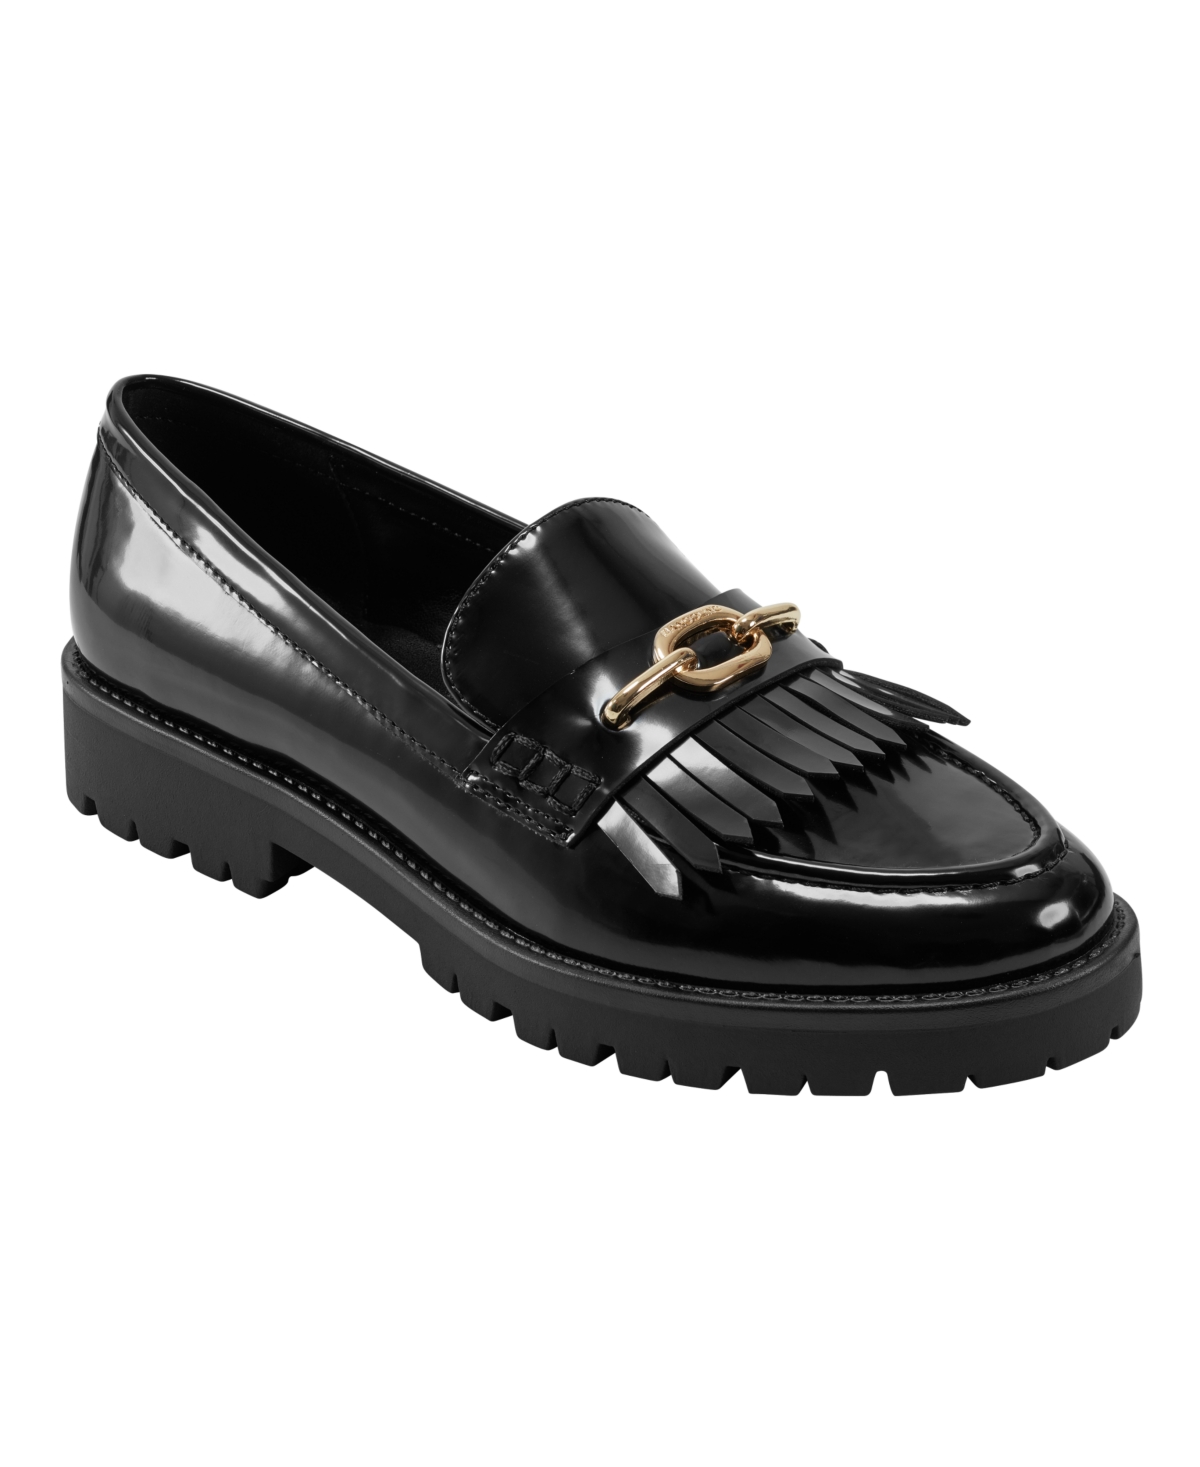 Women's Florida Slip-On Kilt Detail Lug Sole Loafers - Merlot